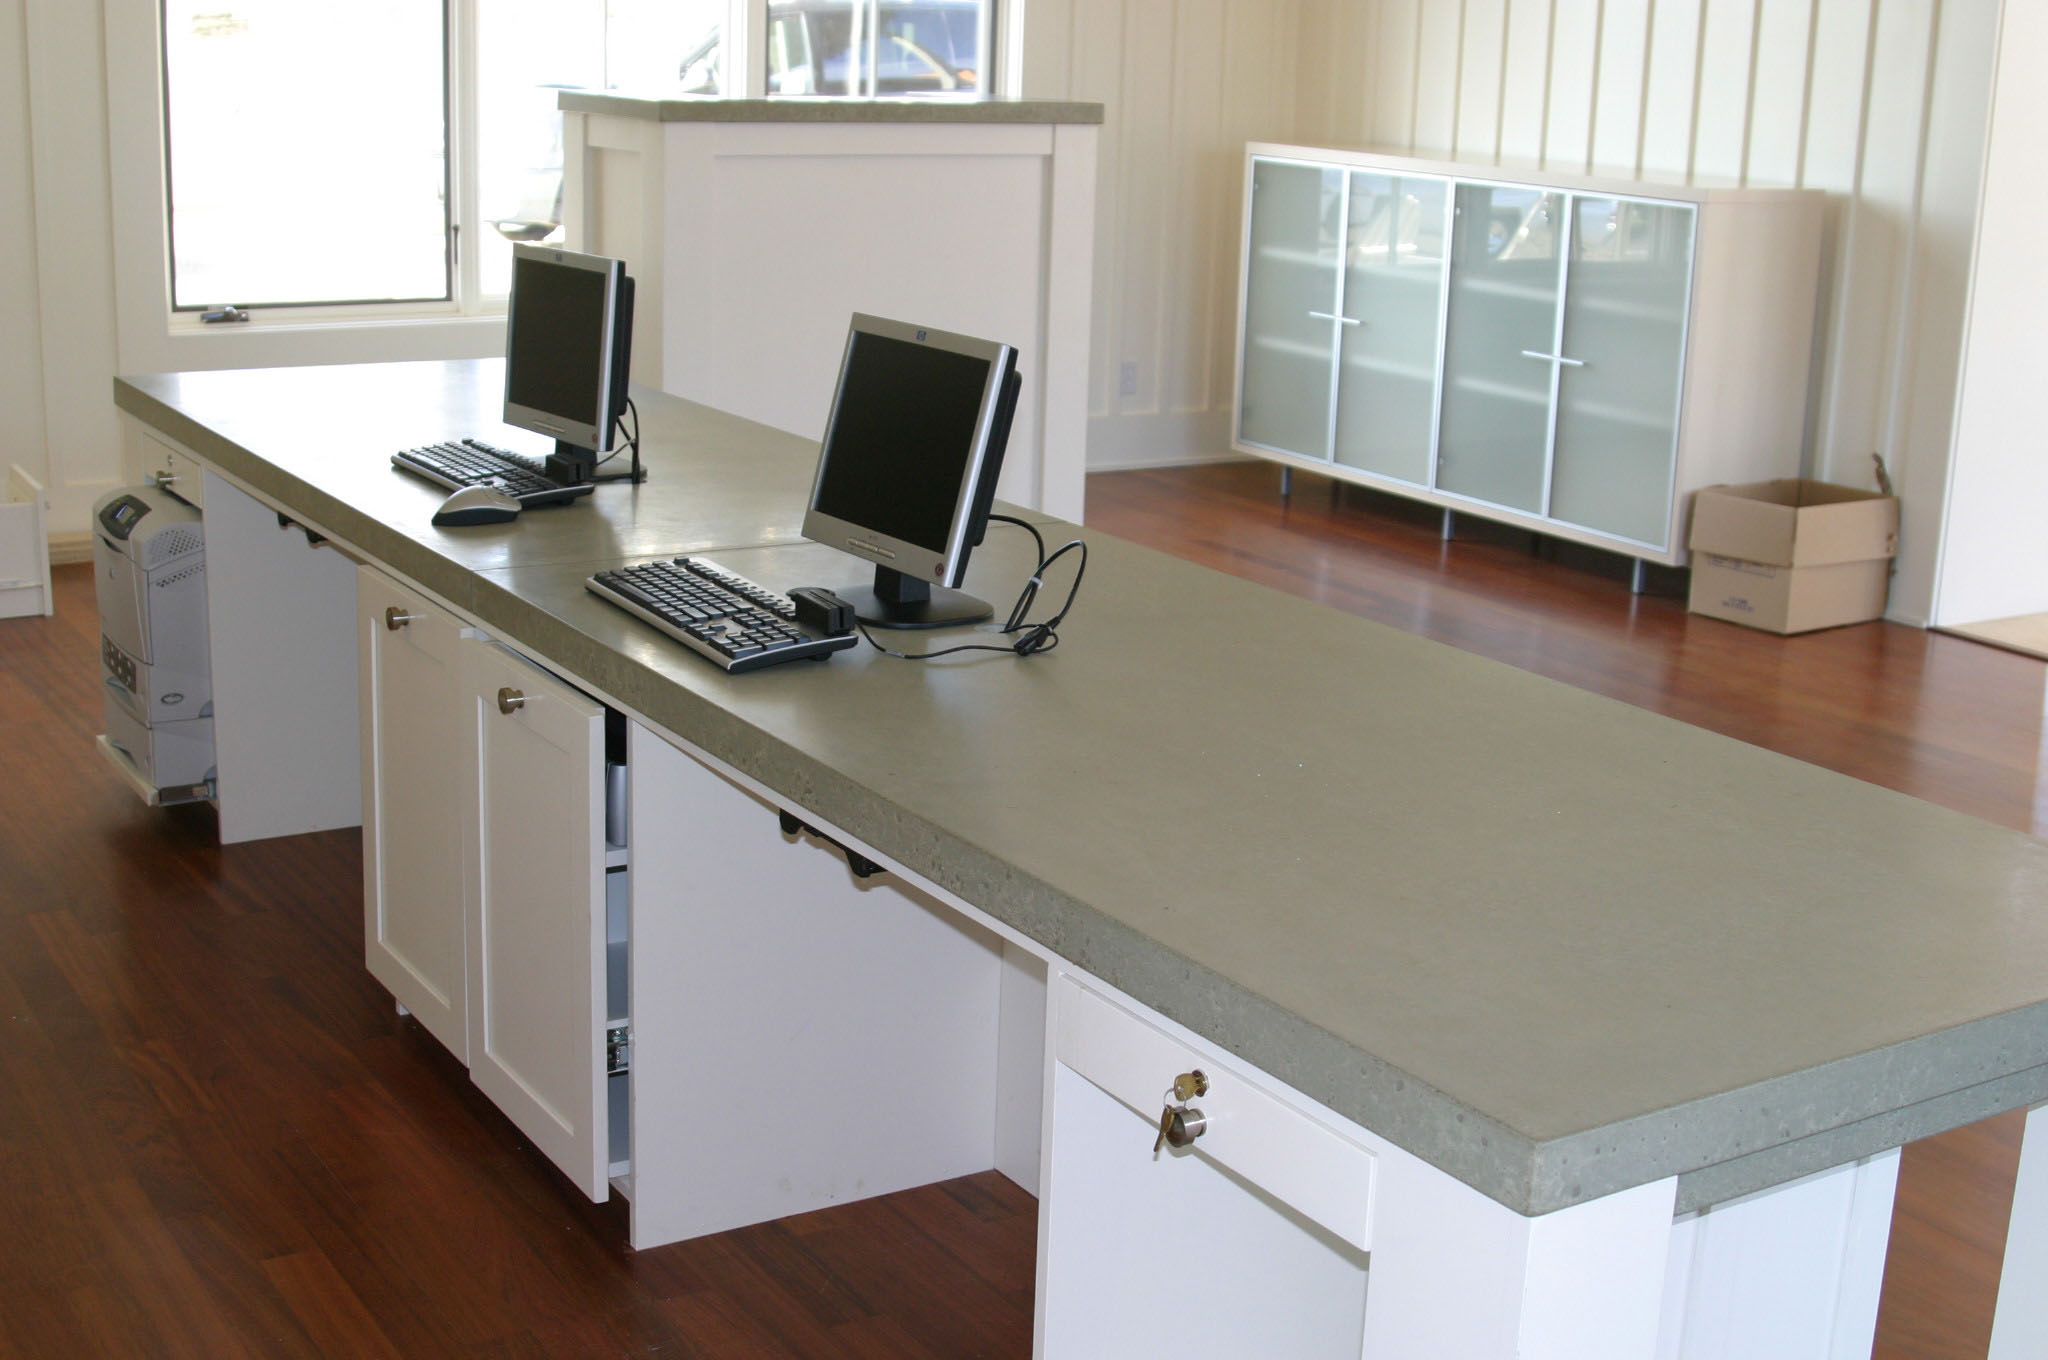 Concrete Countertops at Reception Desk